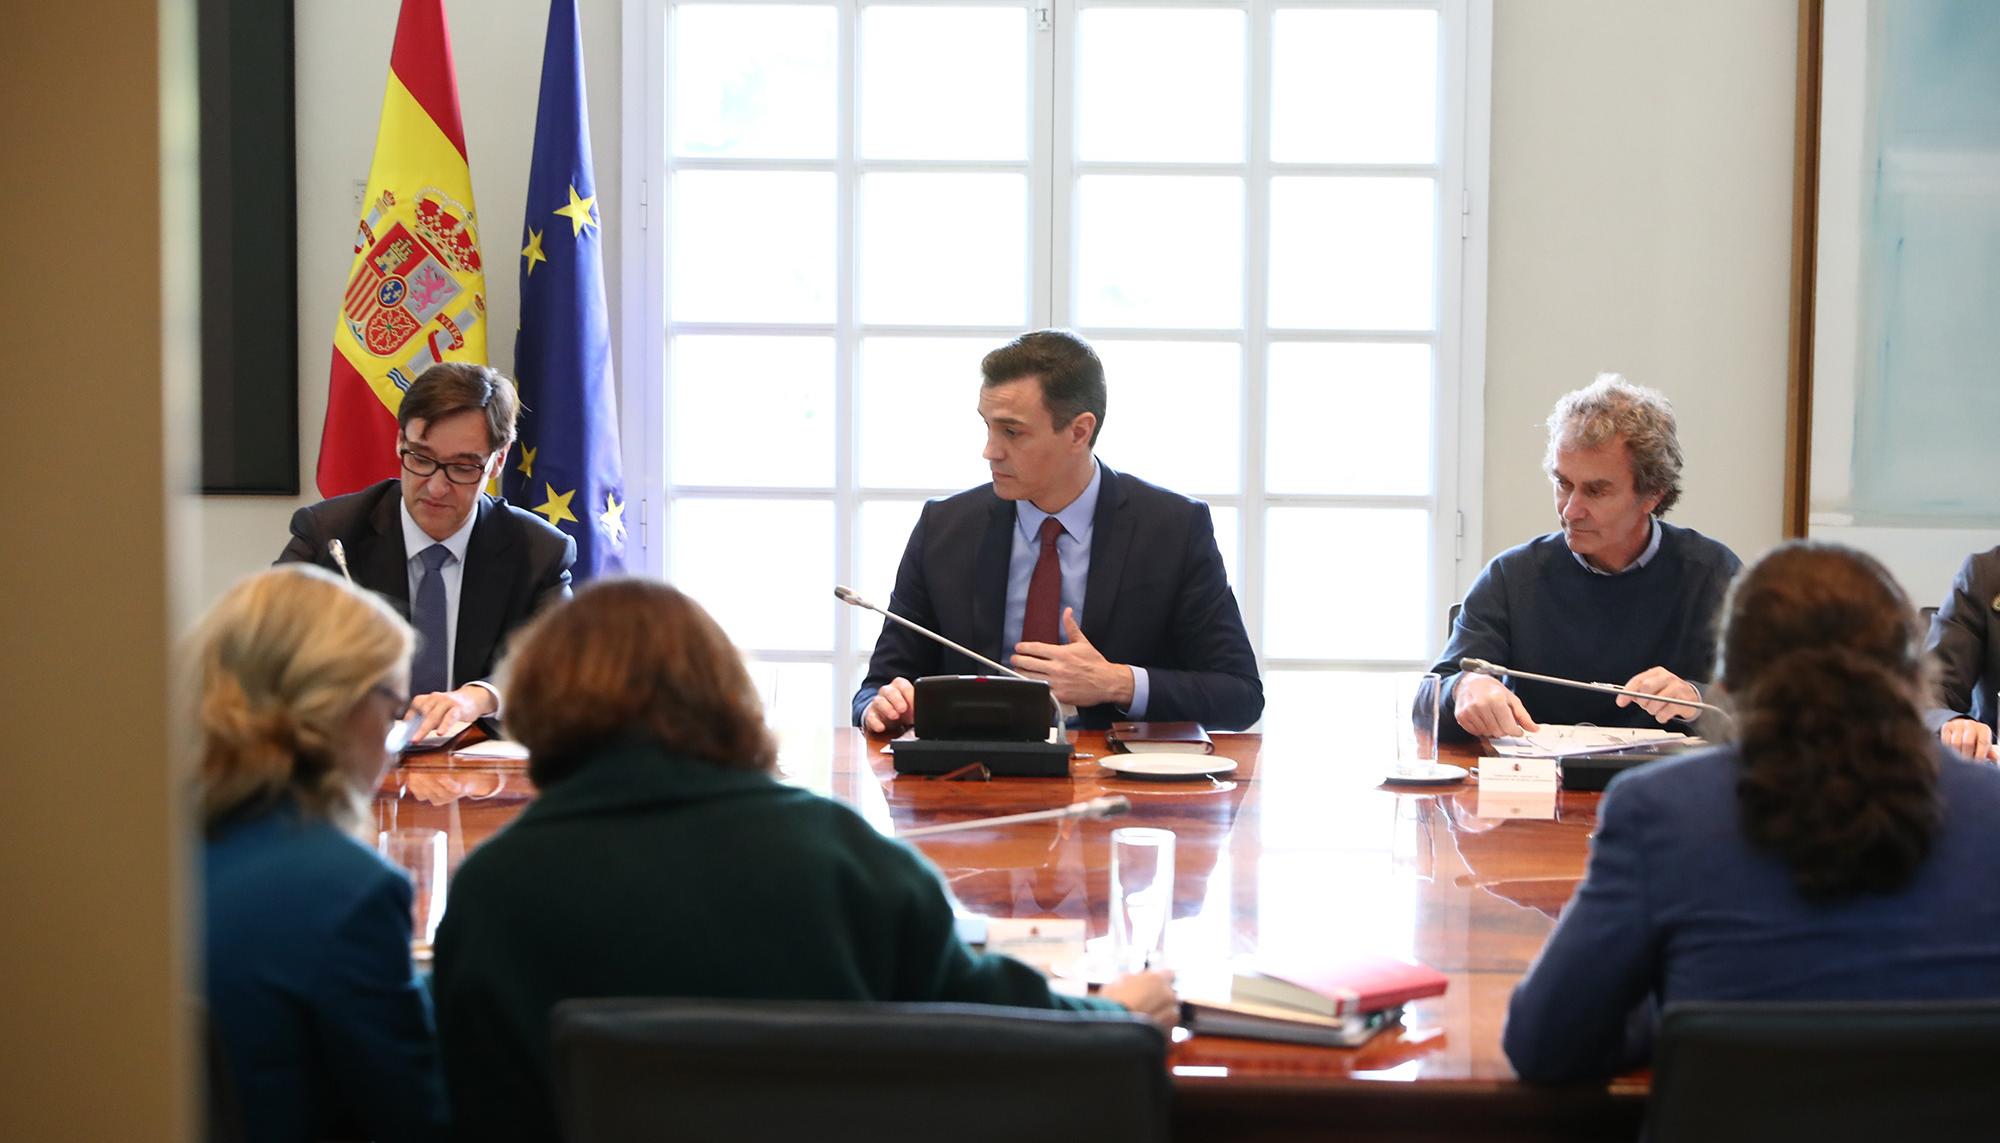 Pedro Sánchez preside la reunión interministerial para la coordinación de la respuesta al coronavirus II